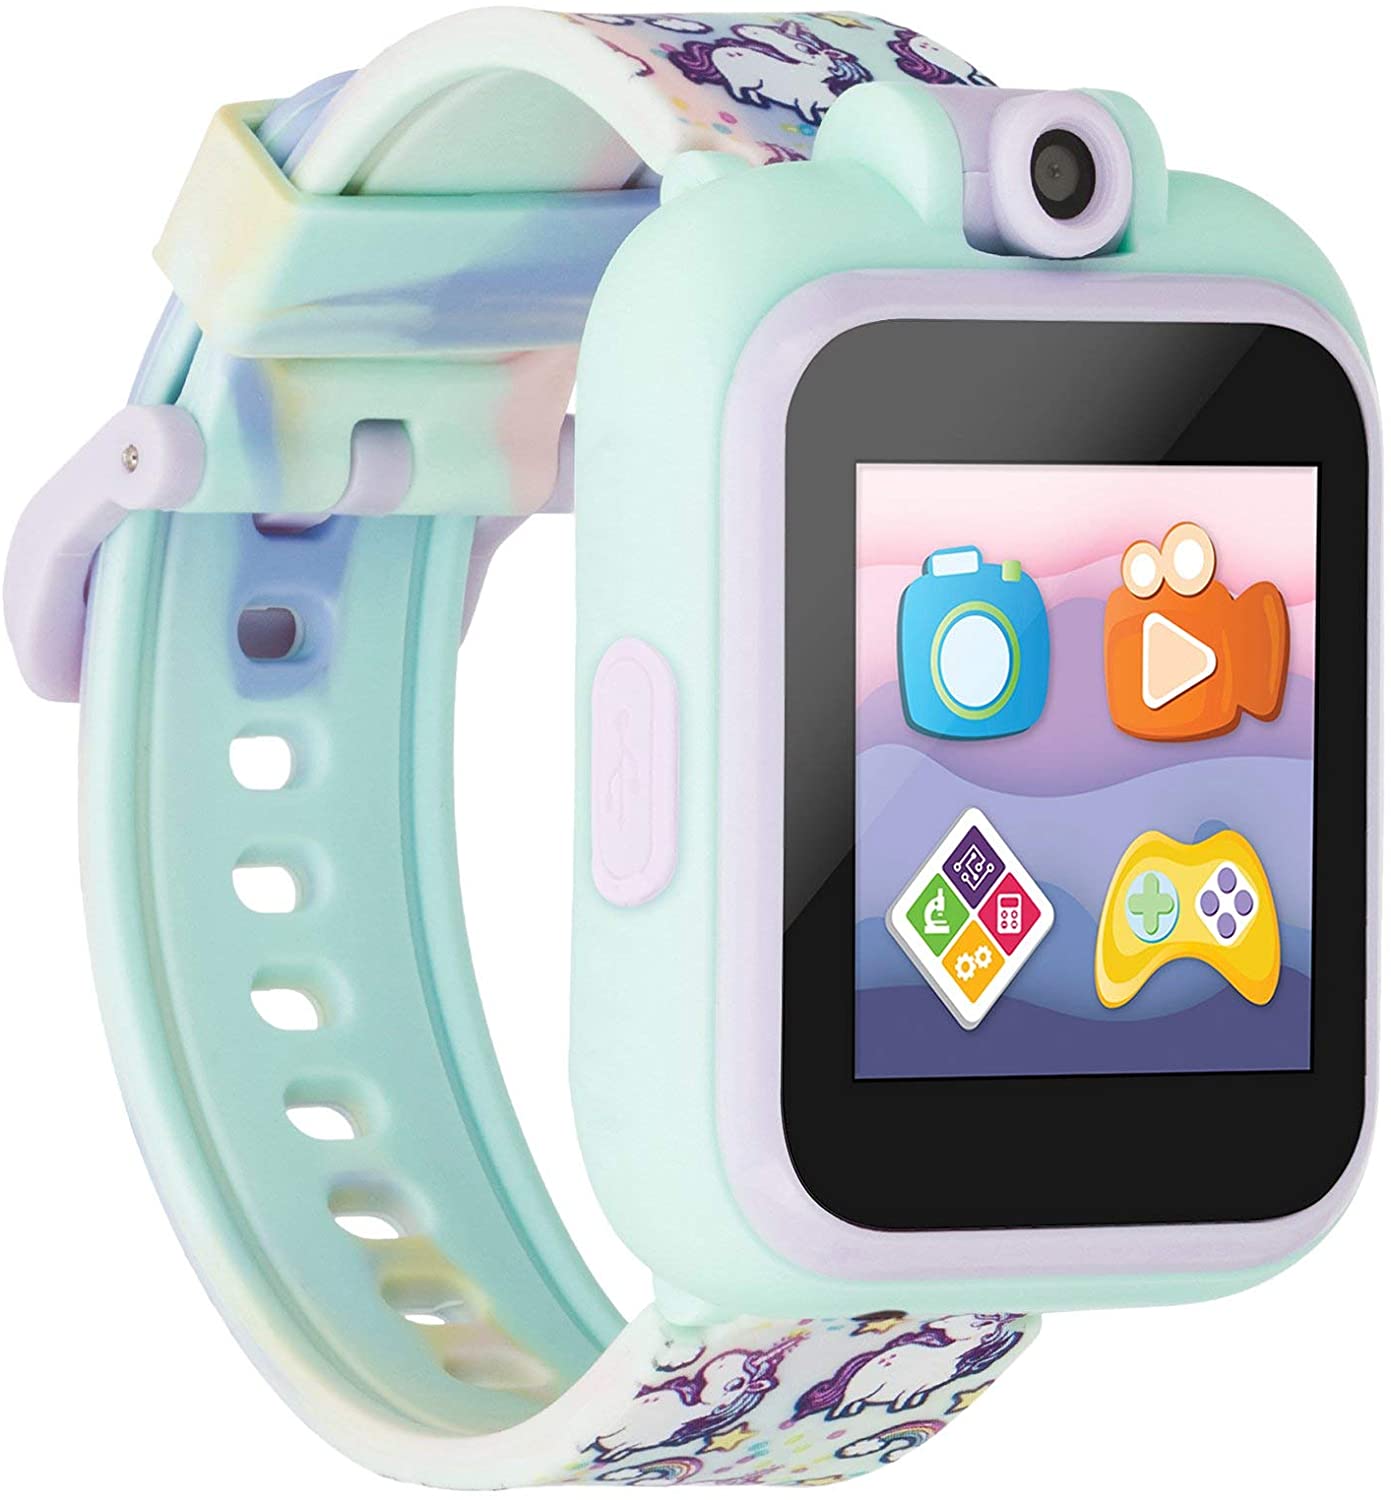 PlayZoom 2 Kids Smartwatch: Tie Dye Unicorn Print